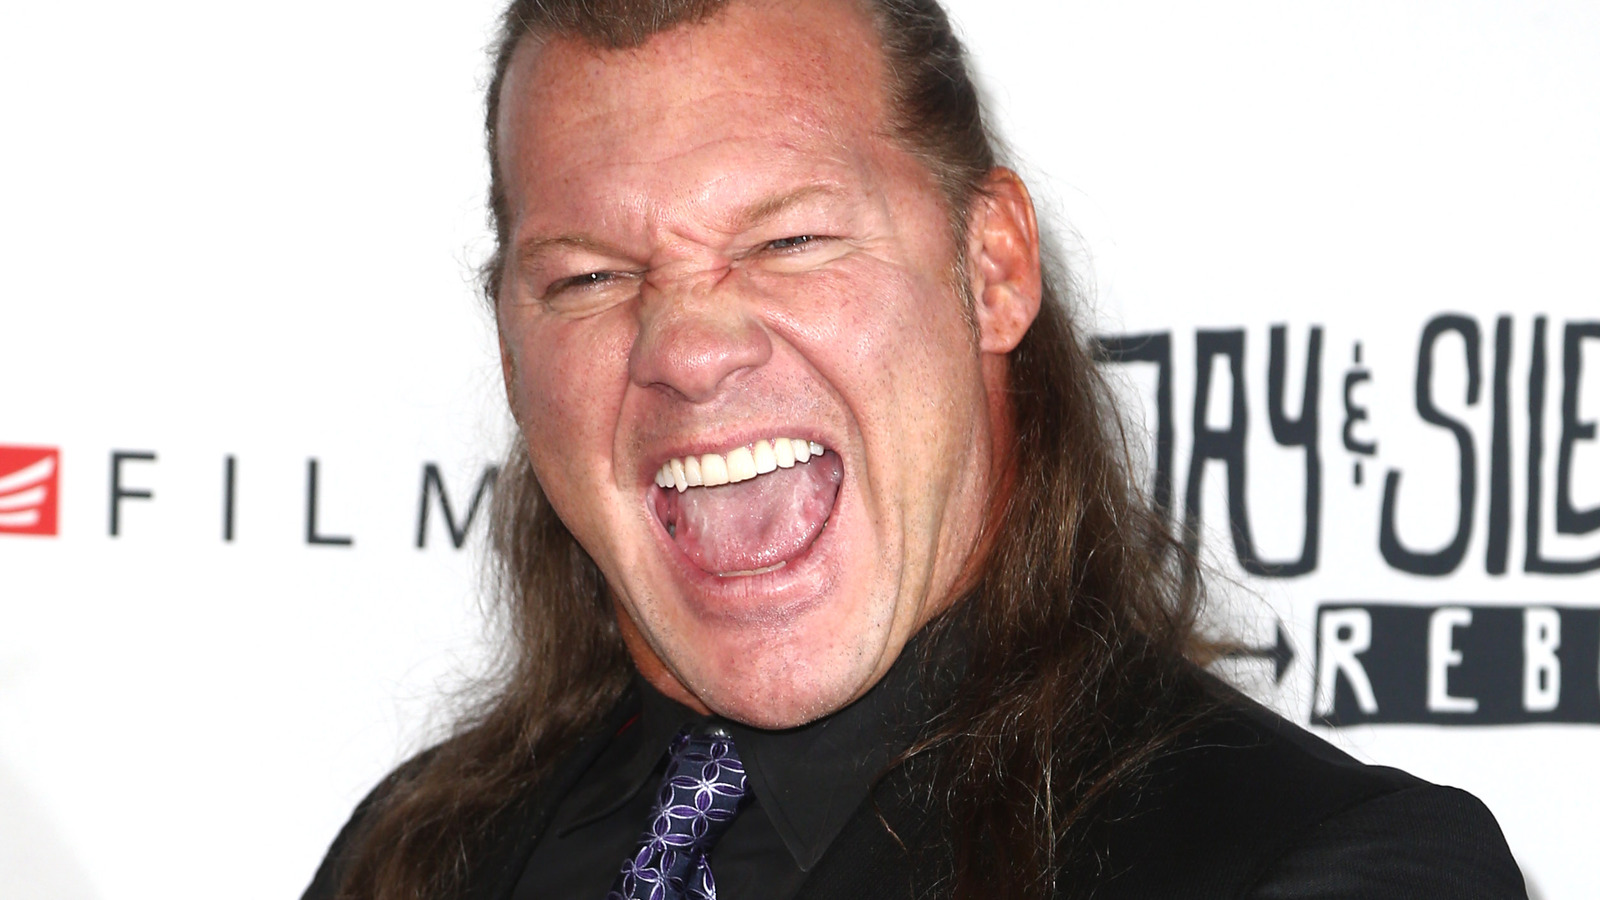 El exjefe de WCW compara a Chris Jericho con Hulk Hogan